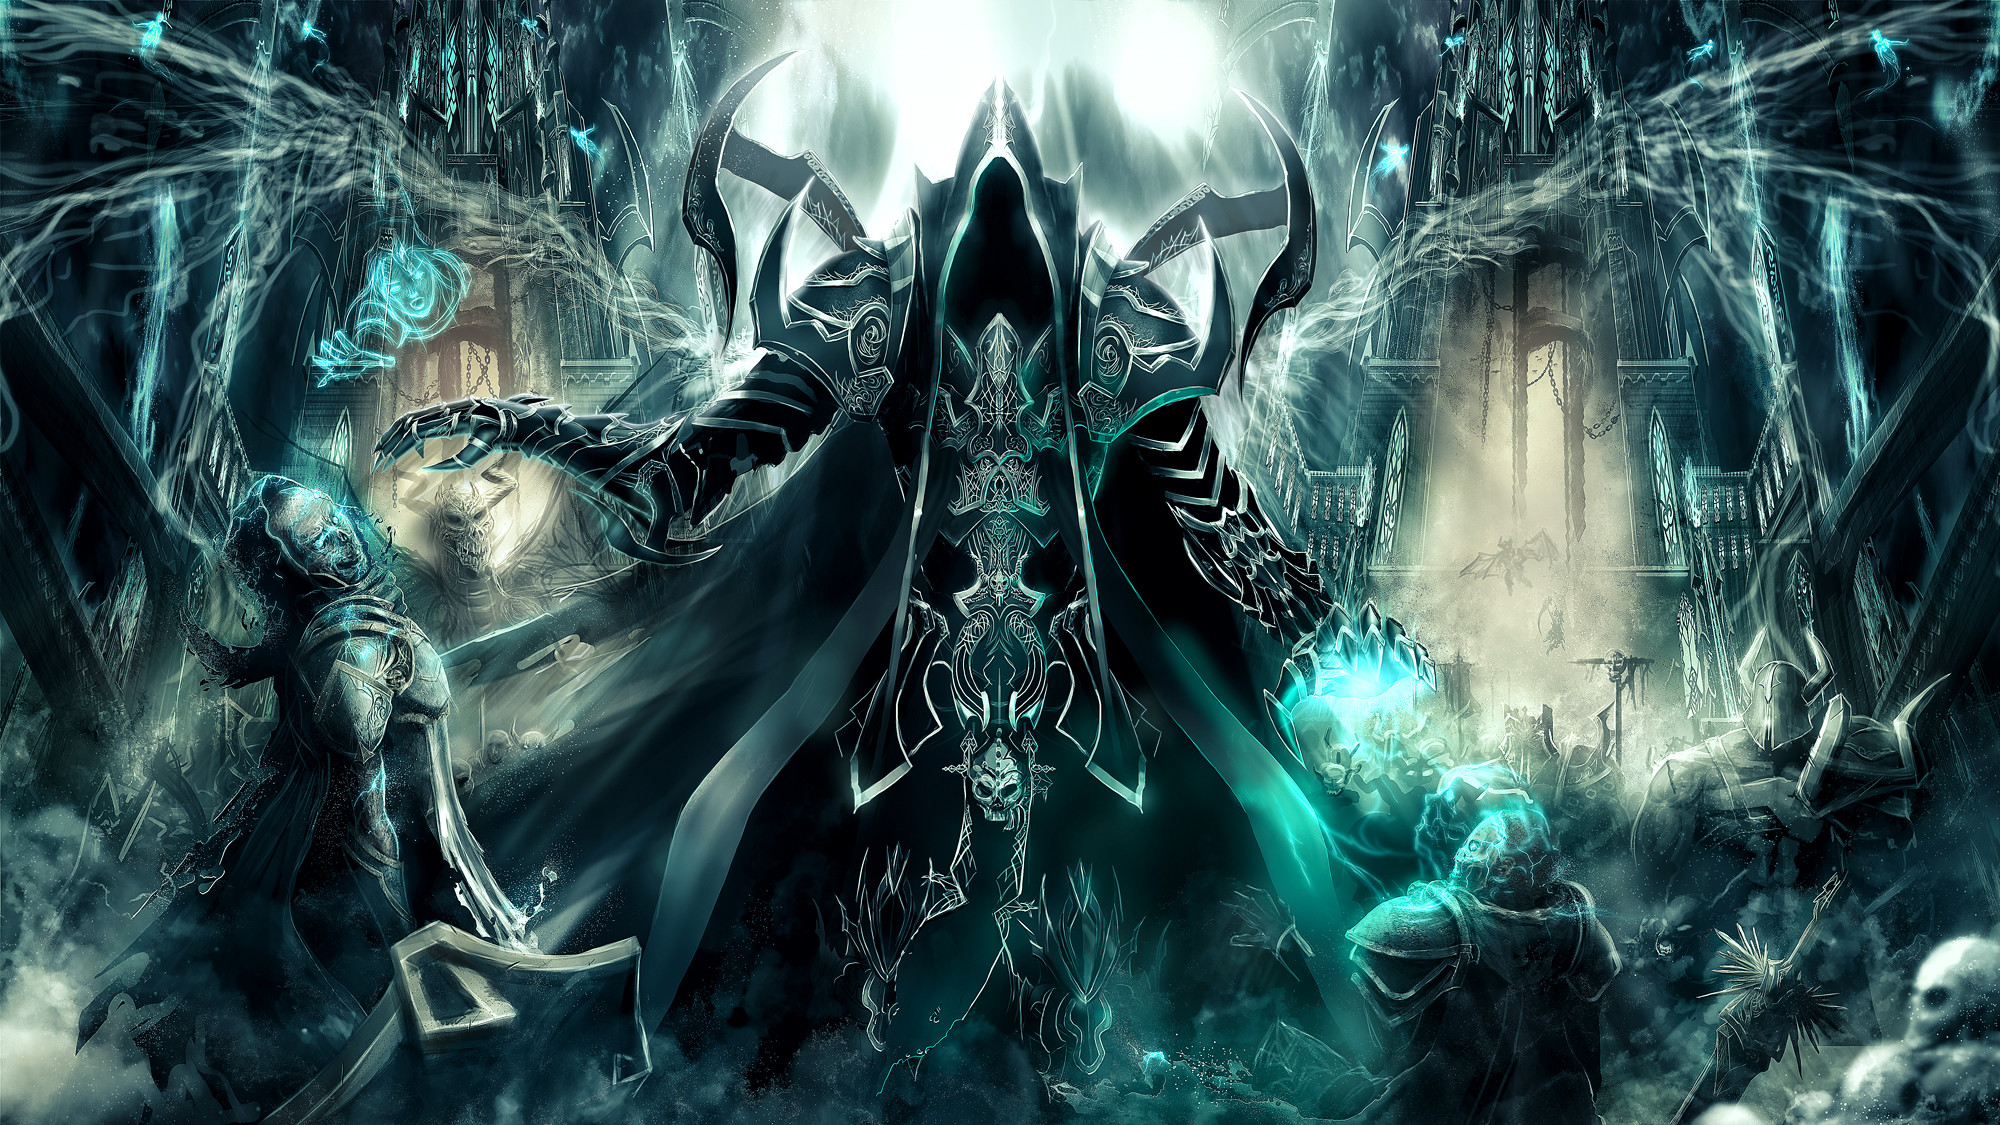 2000x1125 166 Diablo III: Reaper Of Souls HD Wallpapers | Backgrounds - Wallpaper  Abyss